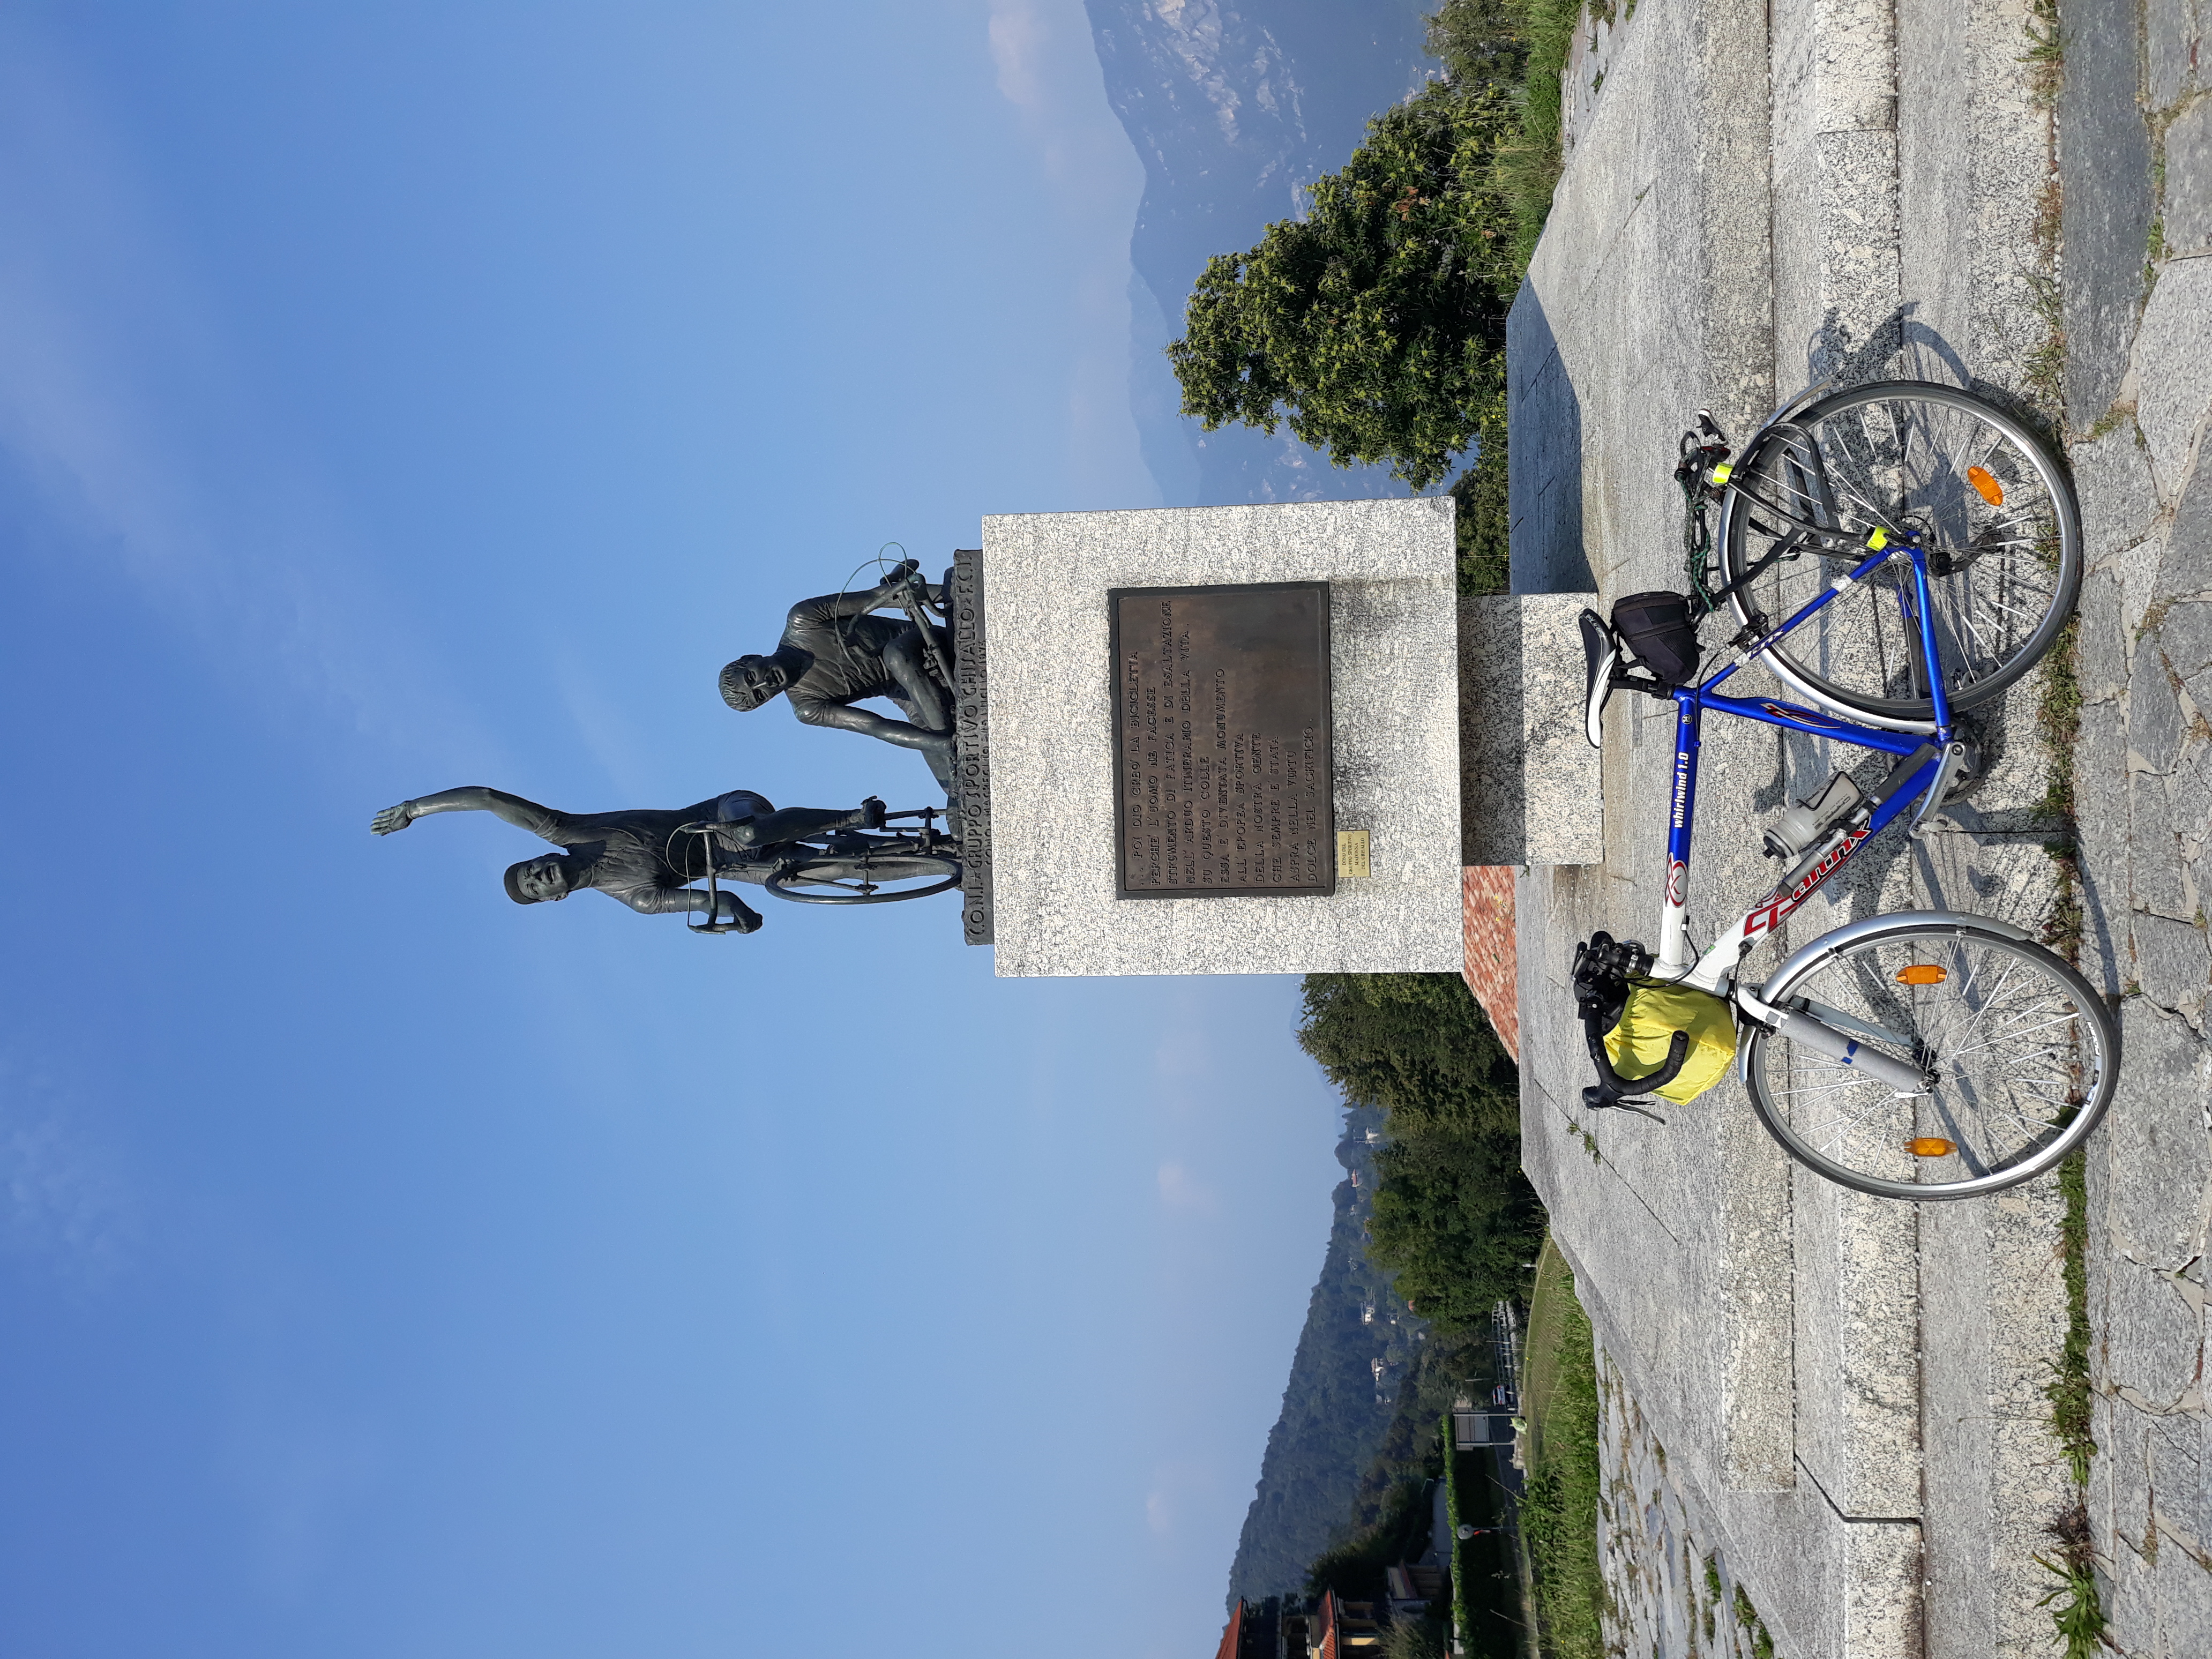  Monte del Ghisallo, győztes és vesztes emlékműve,kerékpáros túratársat keresek